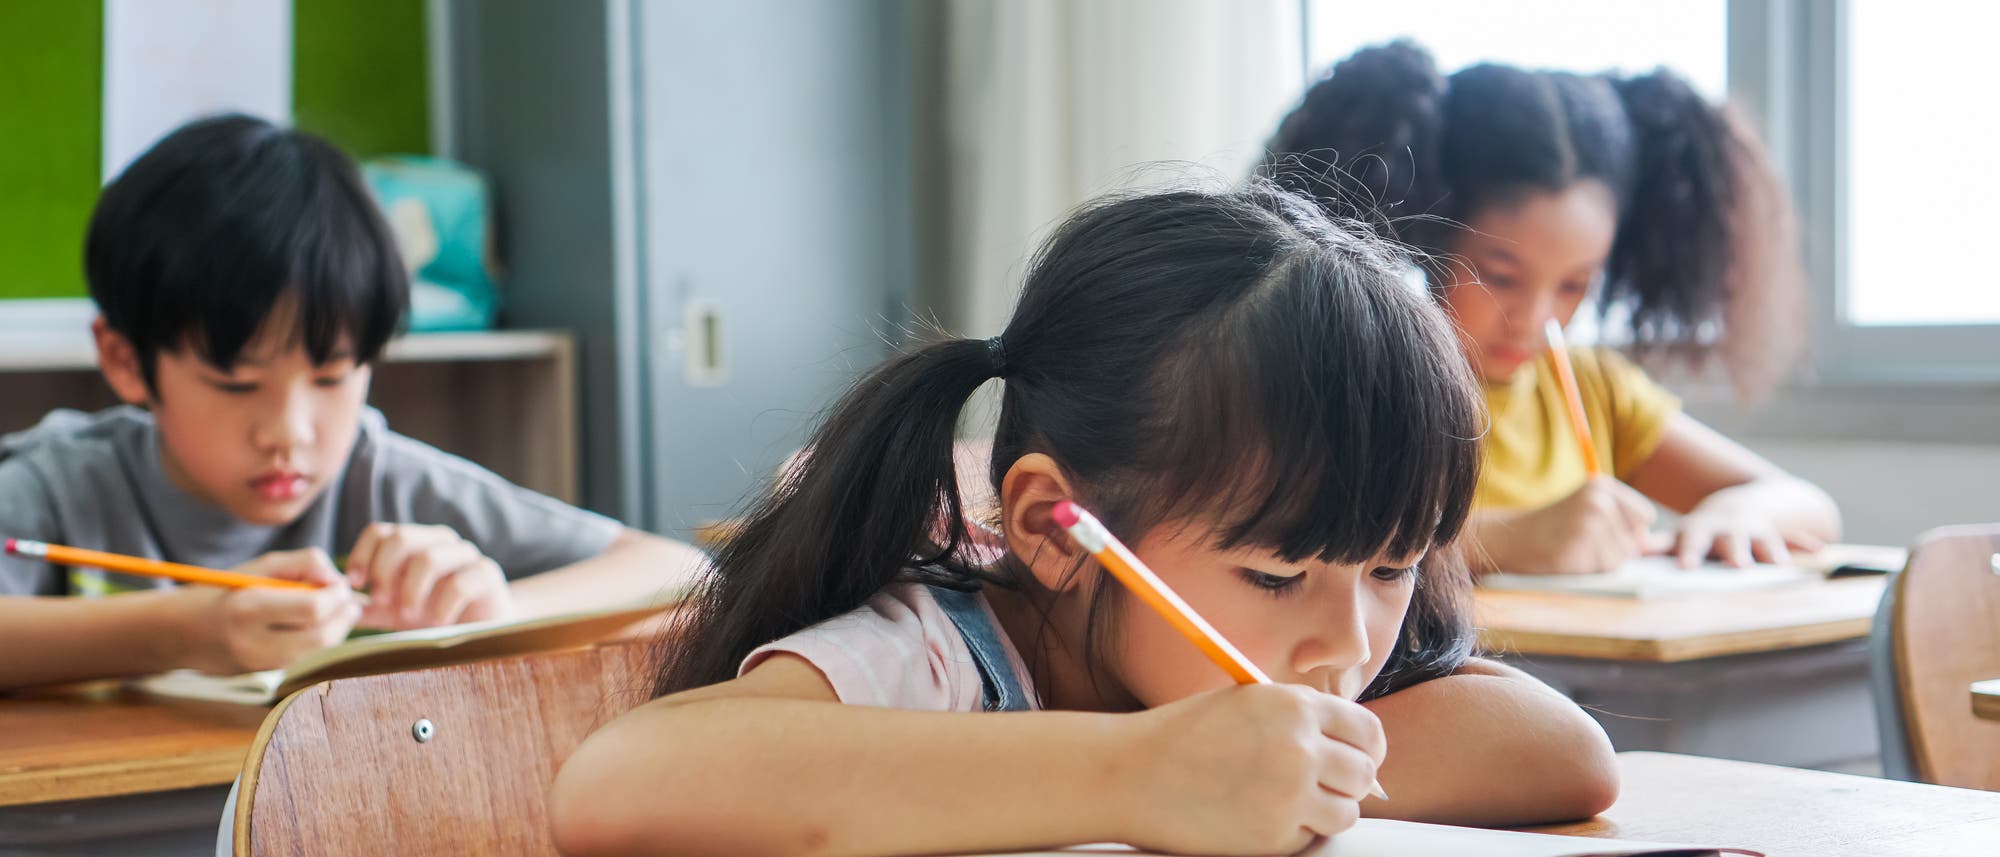 Kinder sitzen in einer Schulklasse in Asien